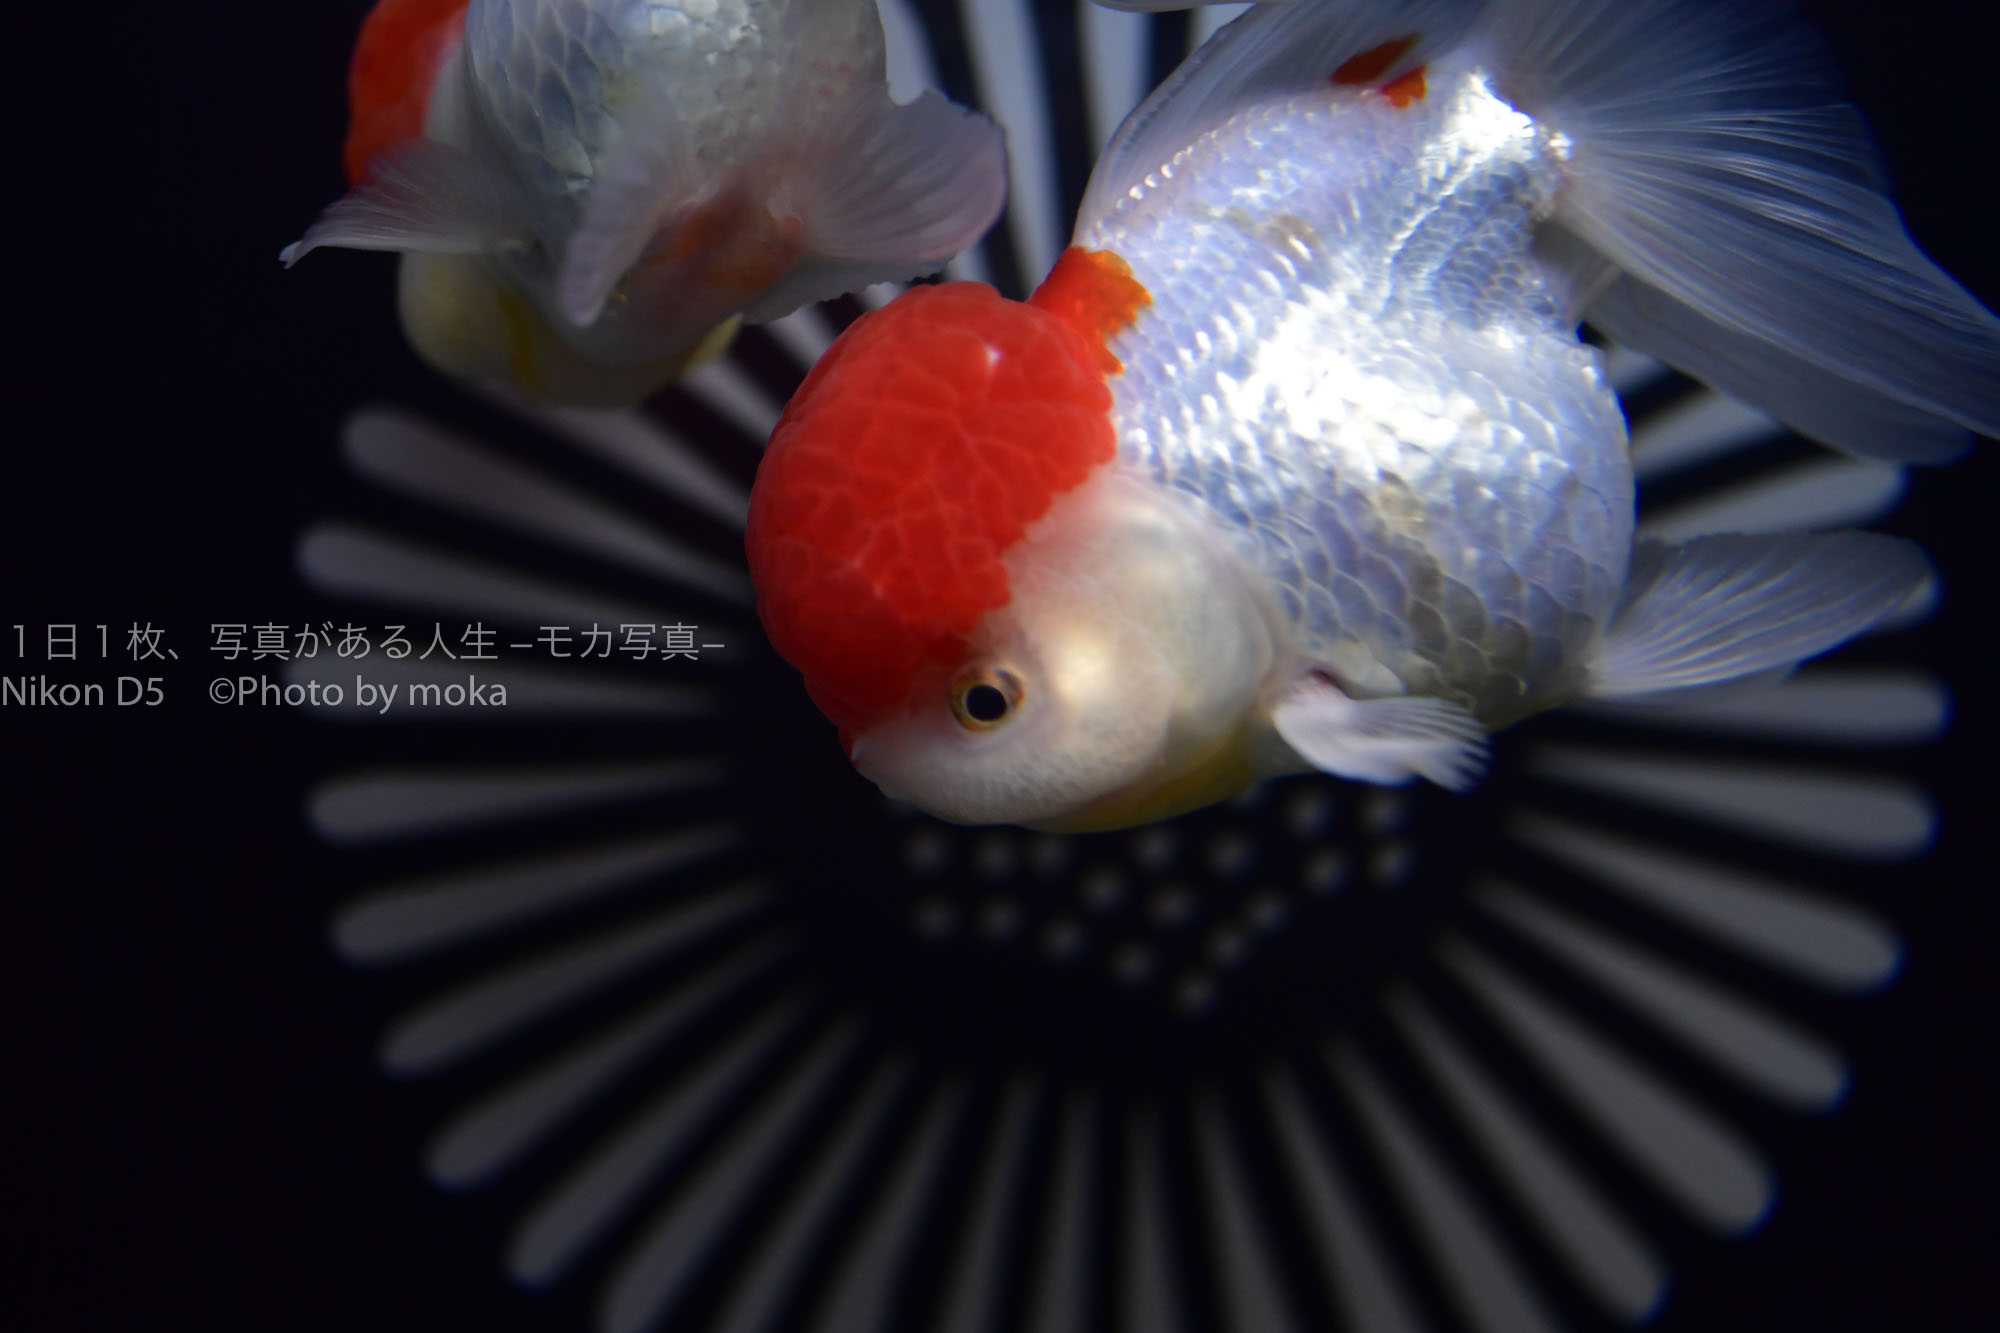 【東京水族館】アクアパーク品川で金魚を美しく写真に撮ろう